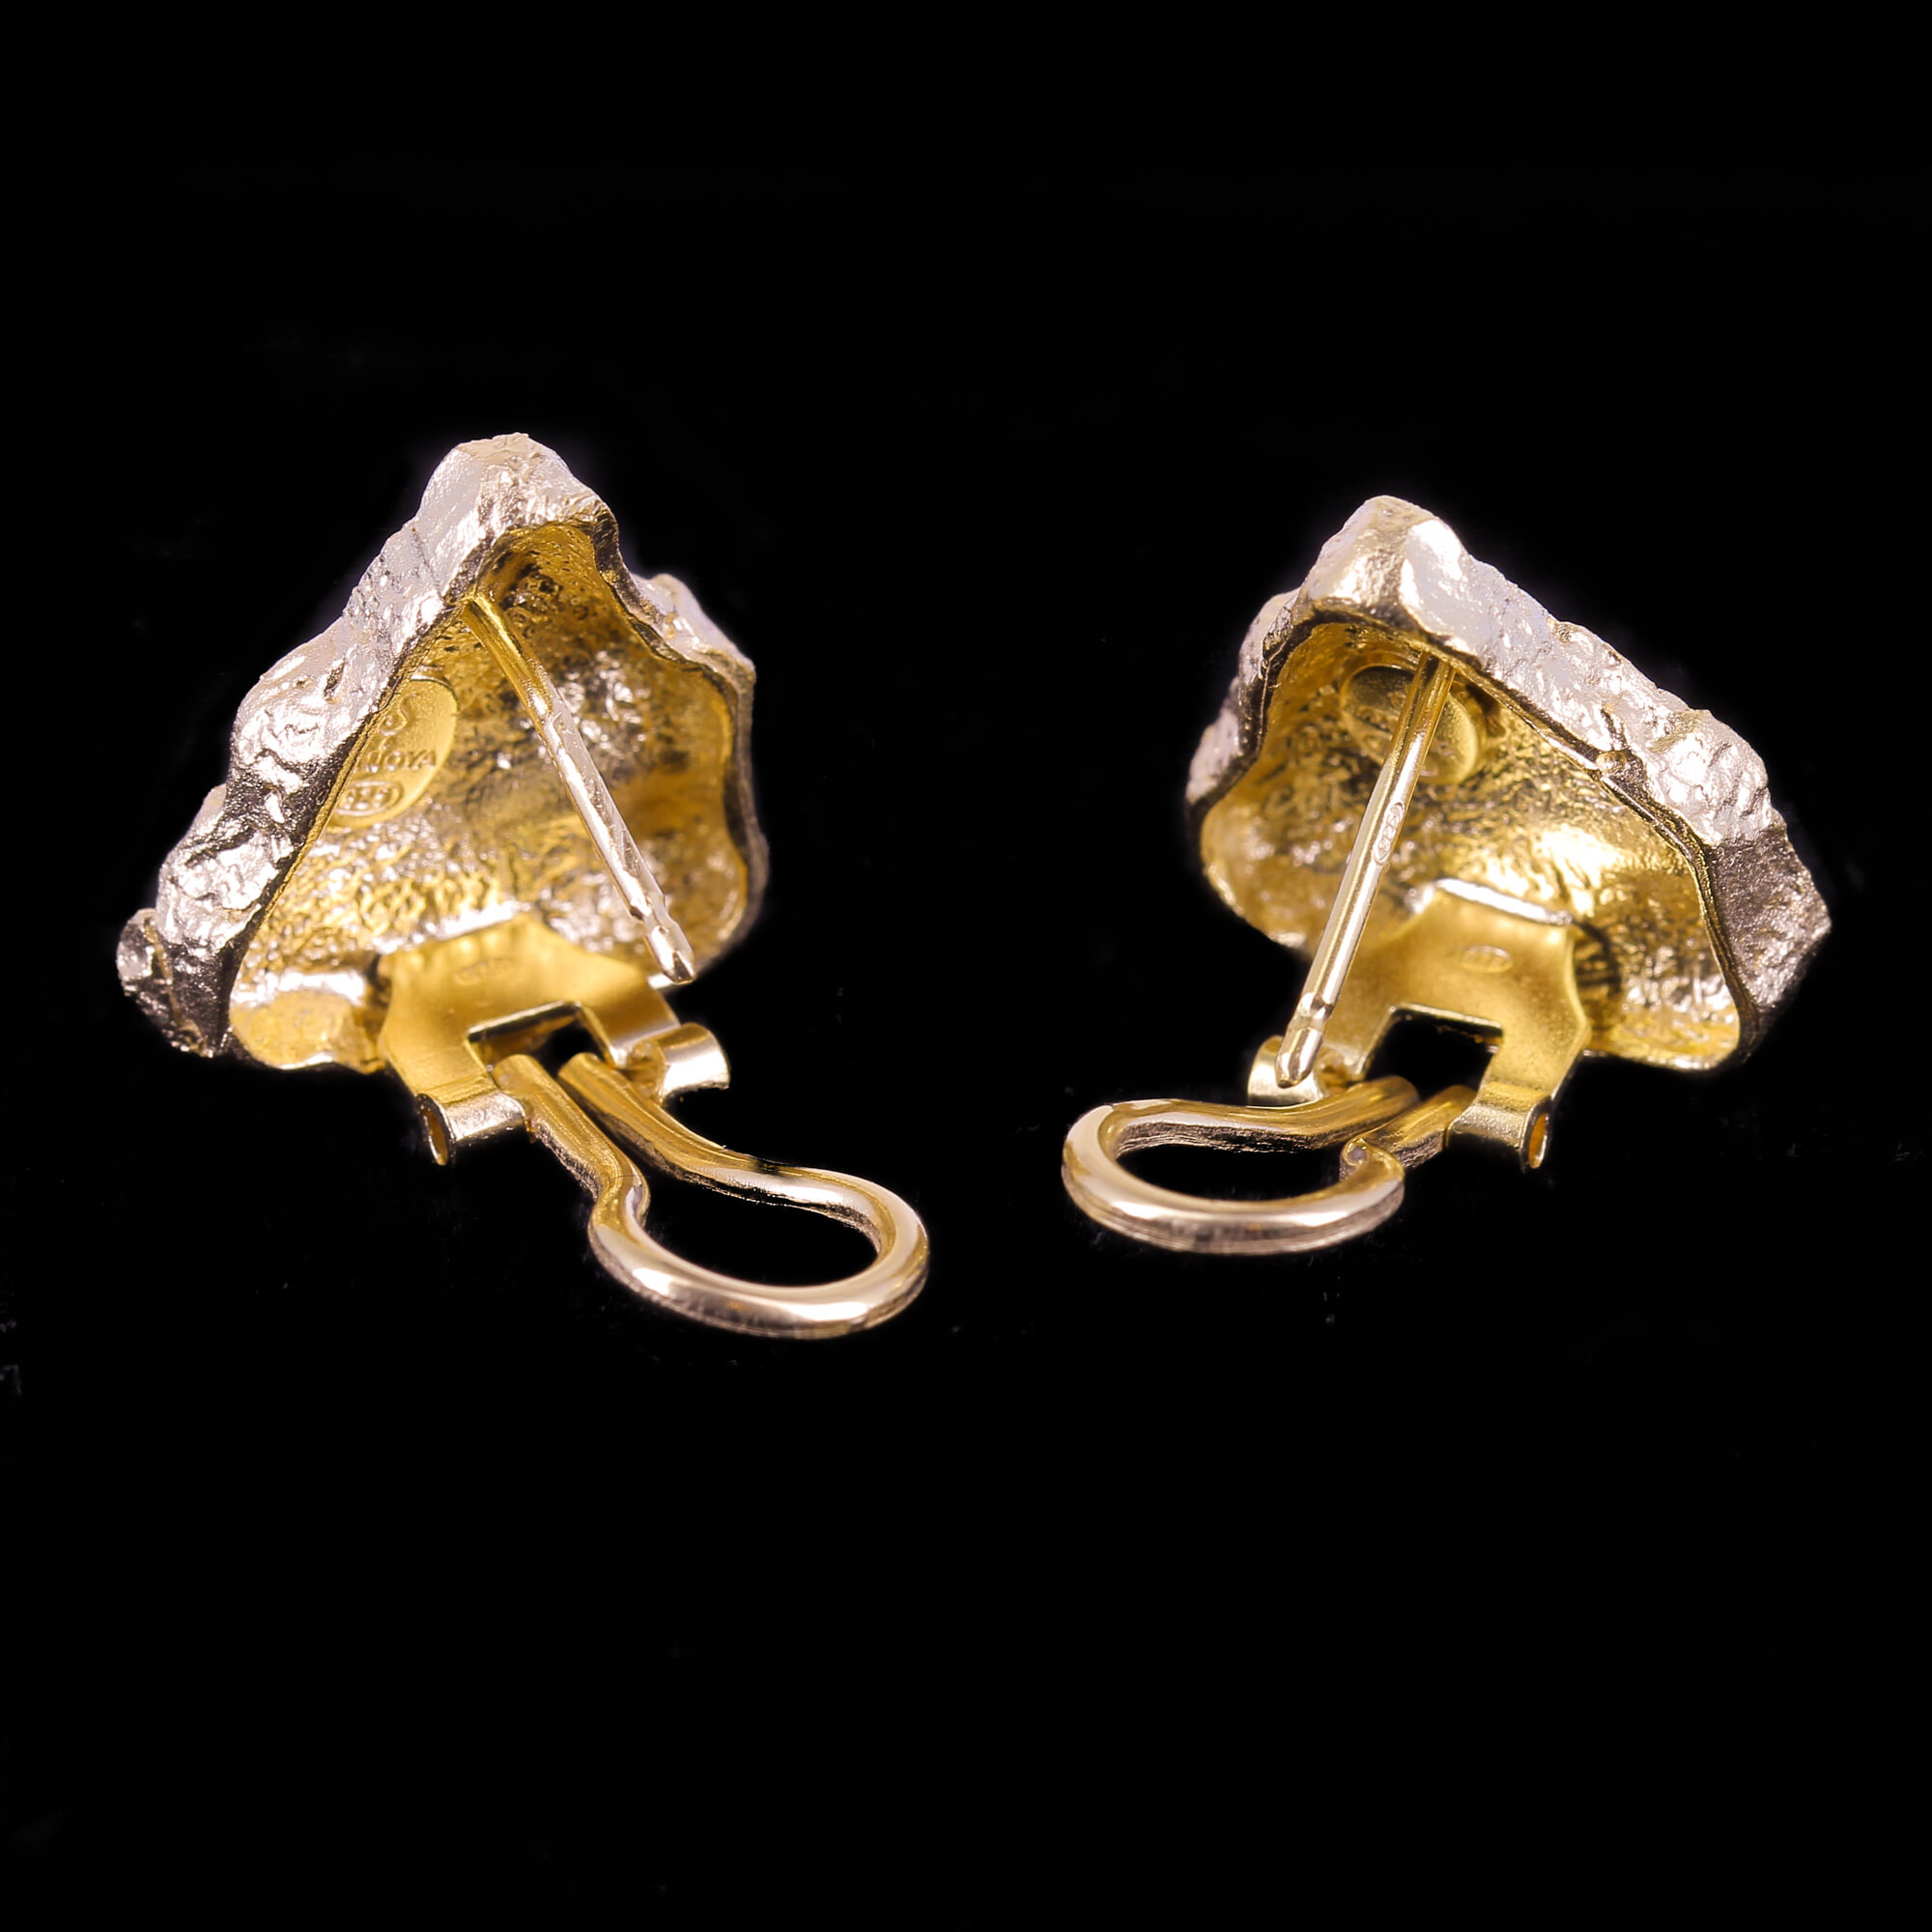 Gold-shaped earrings